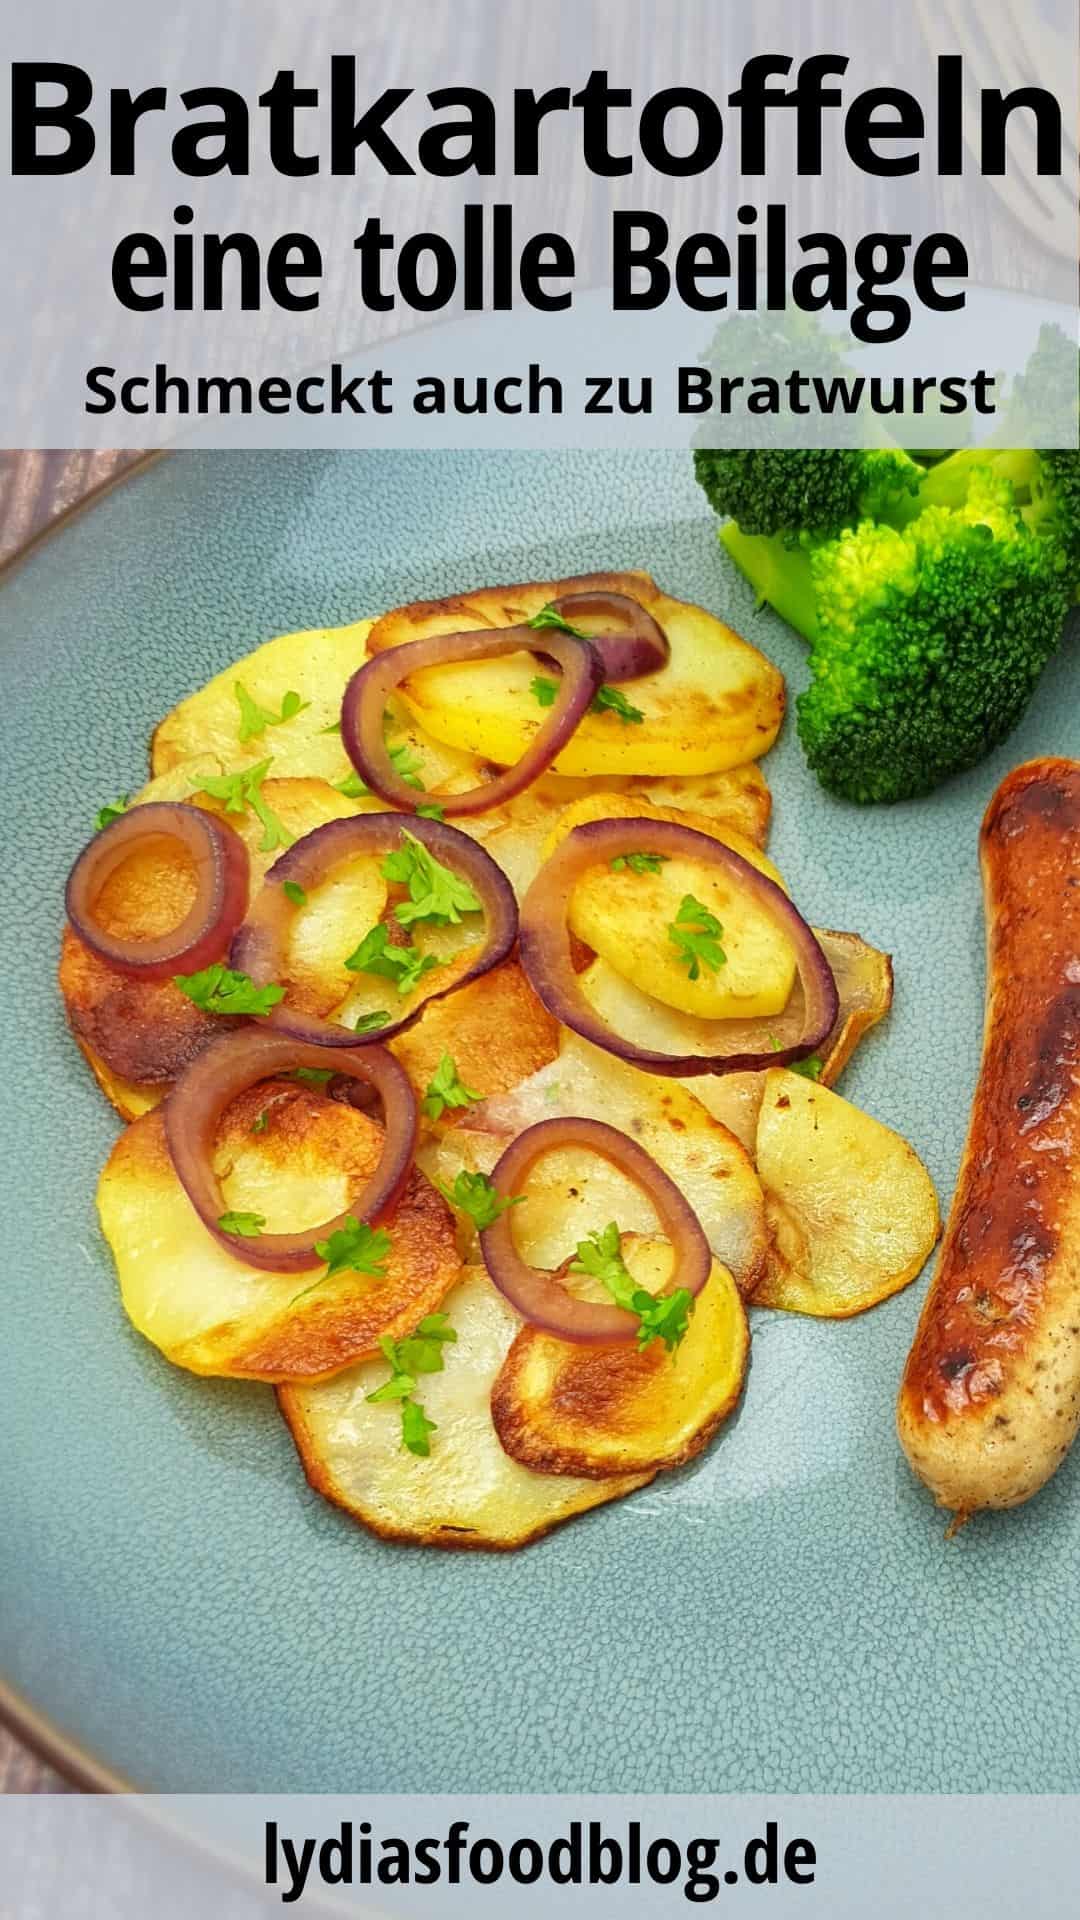 Knusprige Bratkartoffeln mit roten Zwiebel und einer Bratwurst auf einem blauen Teller.